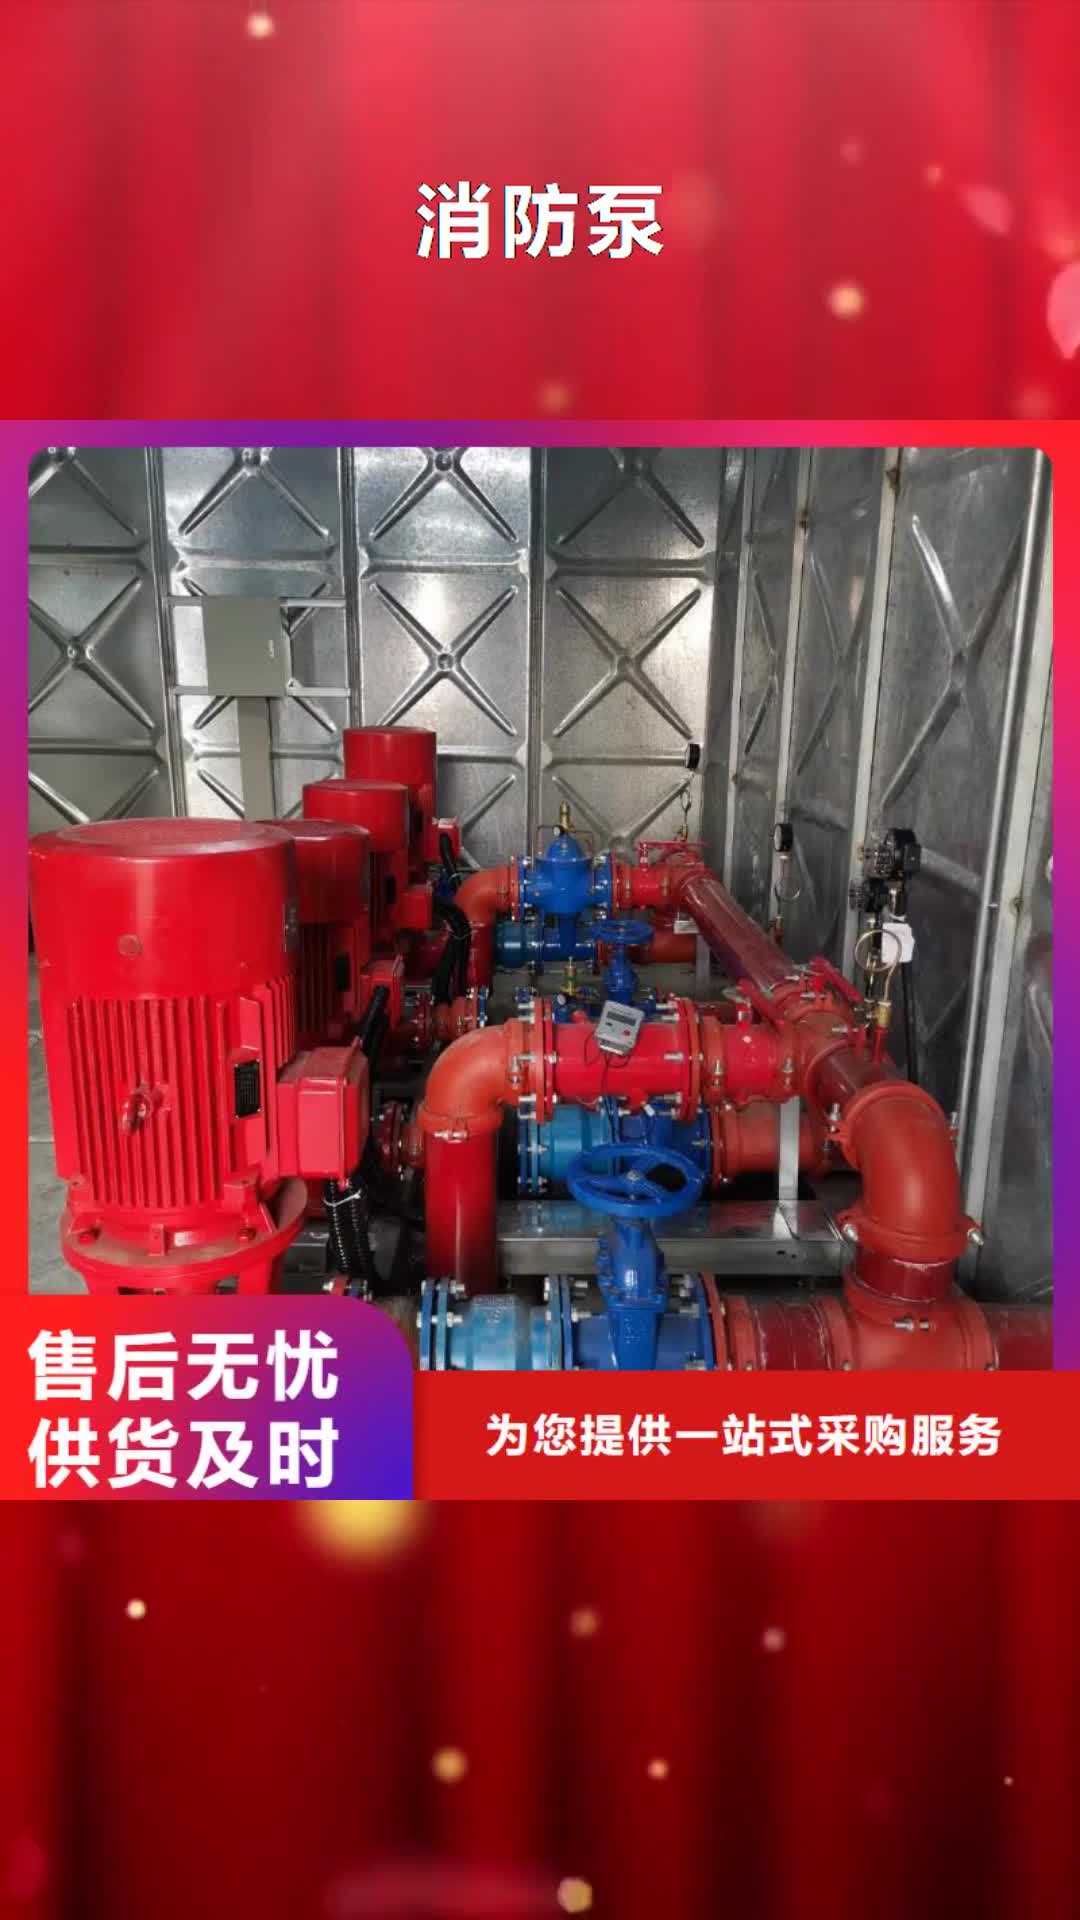 惠州【消防泵】,污水泵用心做好每一件产品